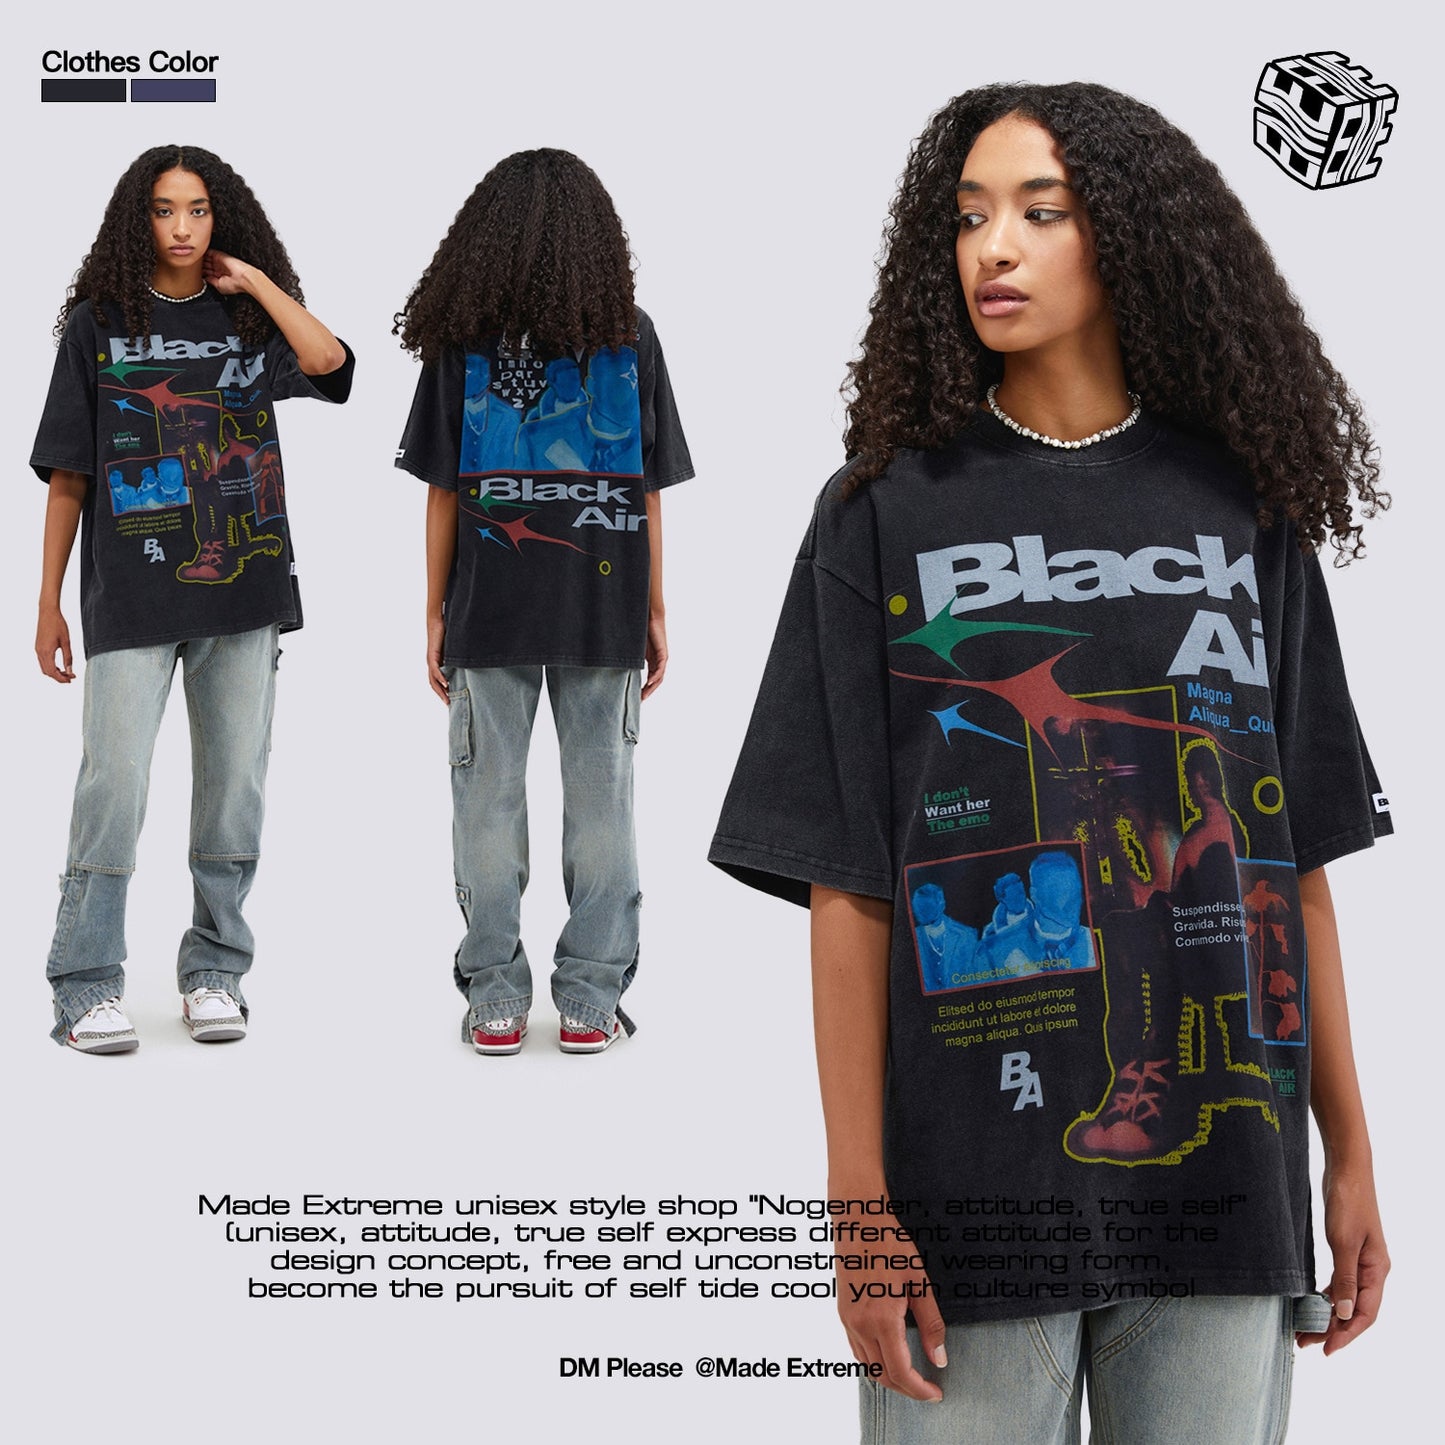 BLACK AIR graphic T-shirt